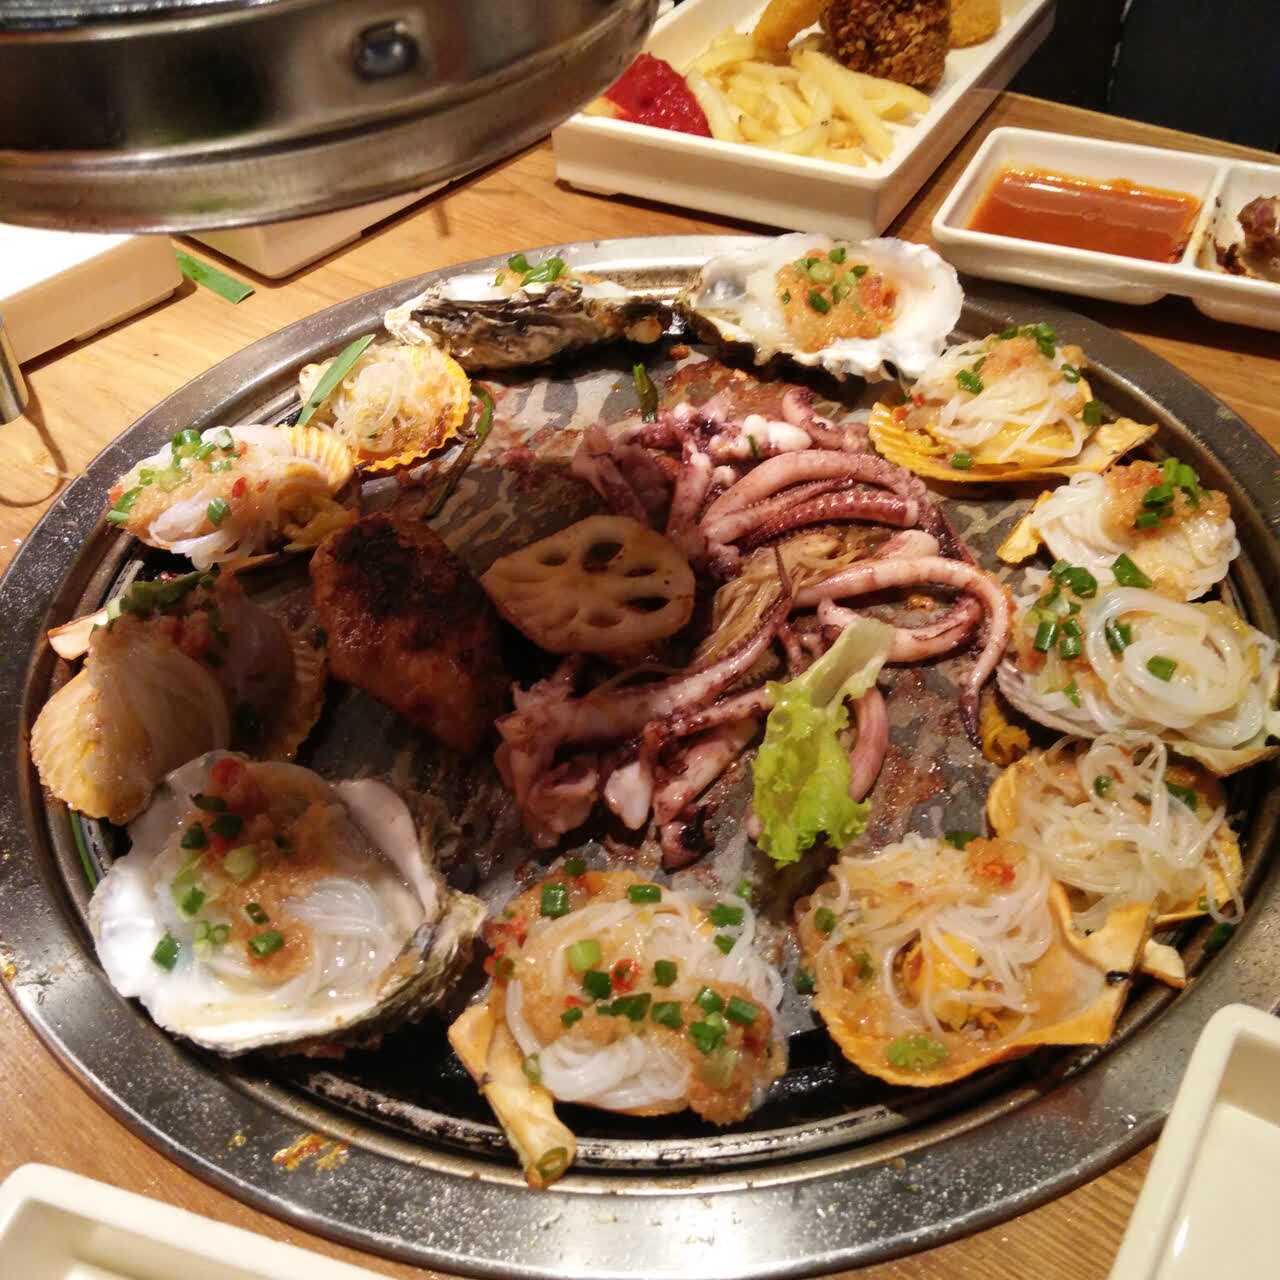 江南道自助烤肉图片